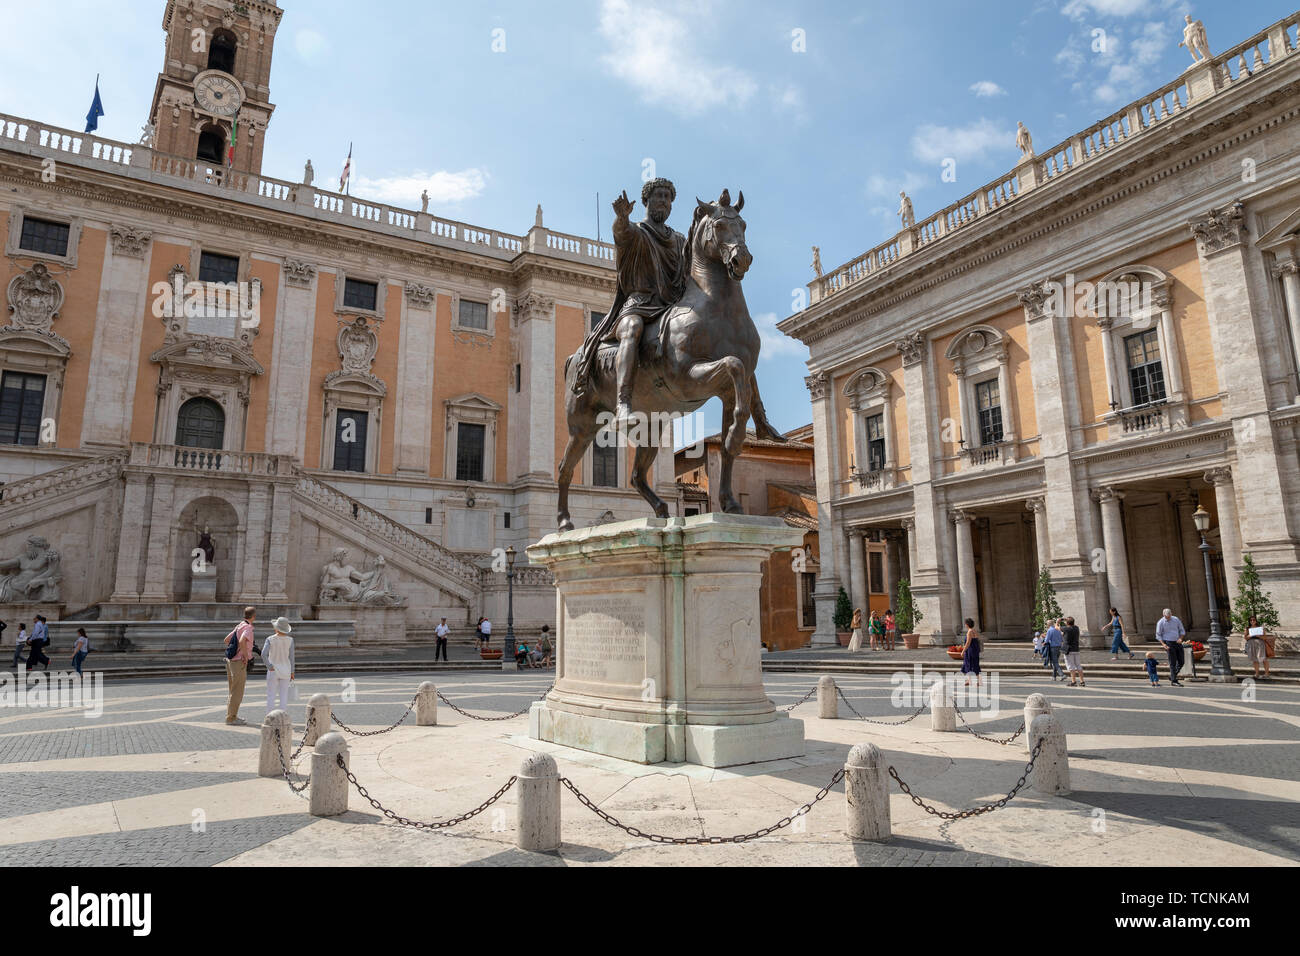 Roma, Italia - 23 Giugno 2018: vista panoramica del Capitolium o il Campidoglio è uno dei sette colli di Roma e la statua equestre di Marco Aurelio è Foto Stock